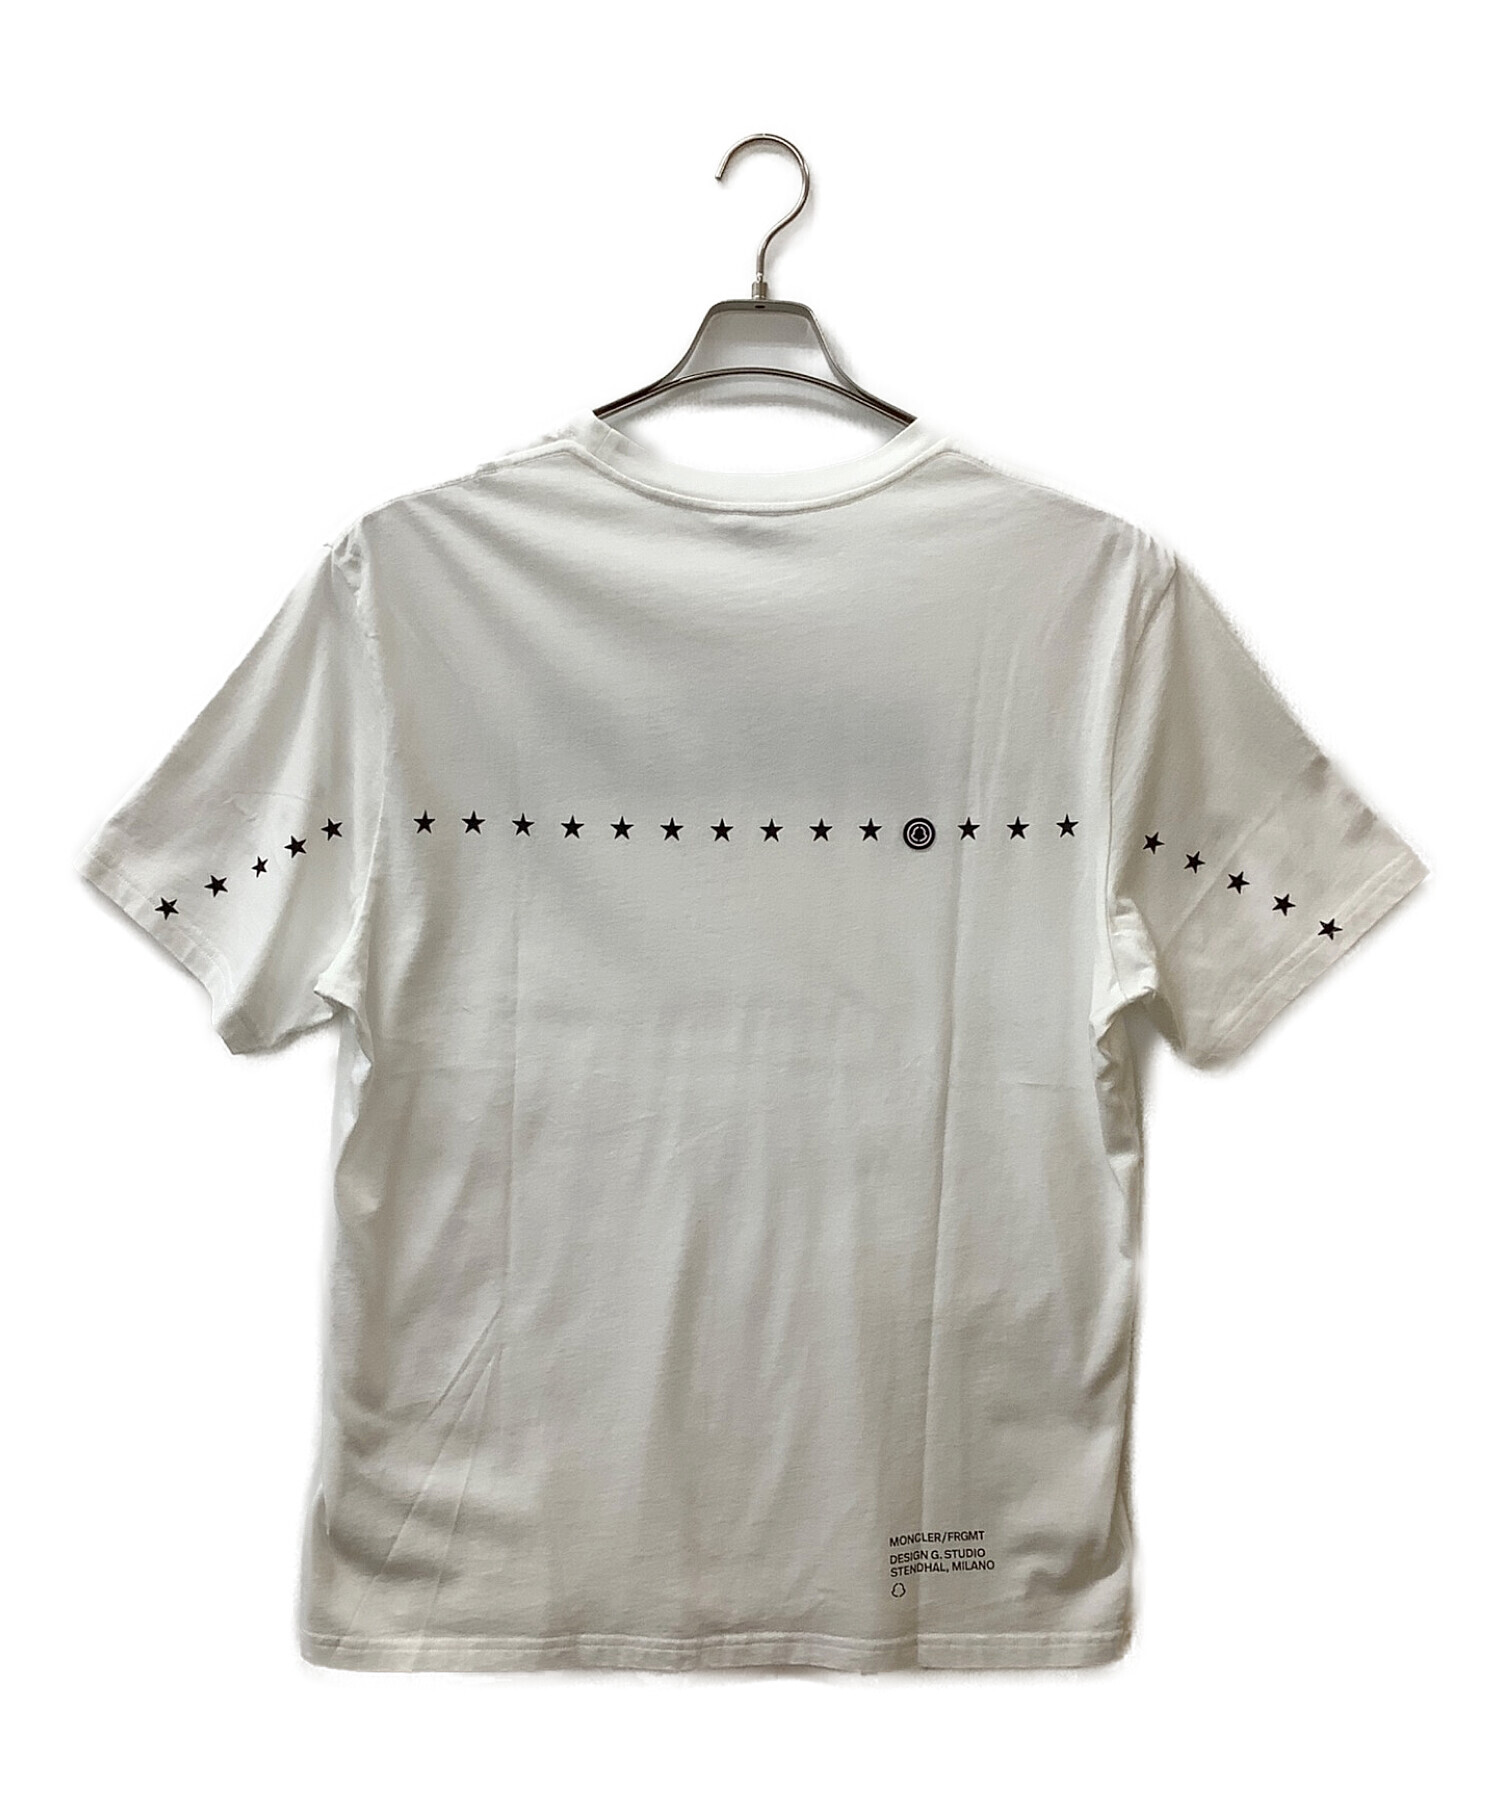 MONCLER (モンクレール) プリントTシャツ ホワイト サイズ:XL